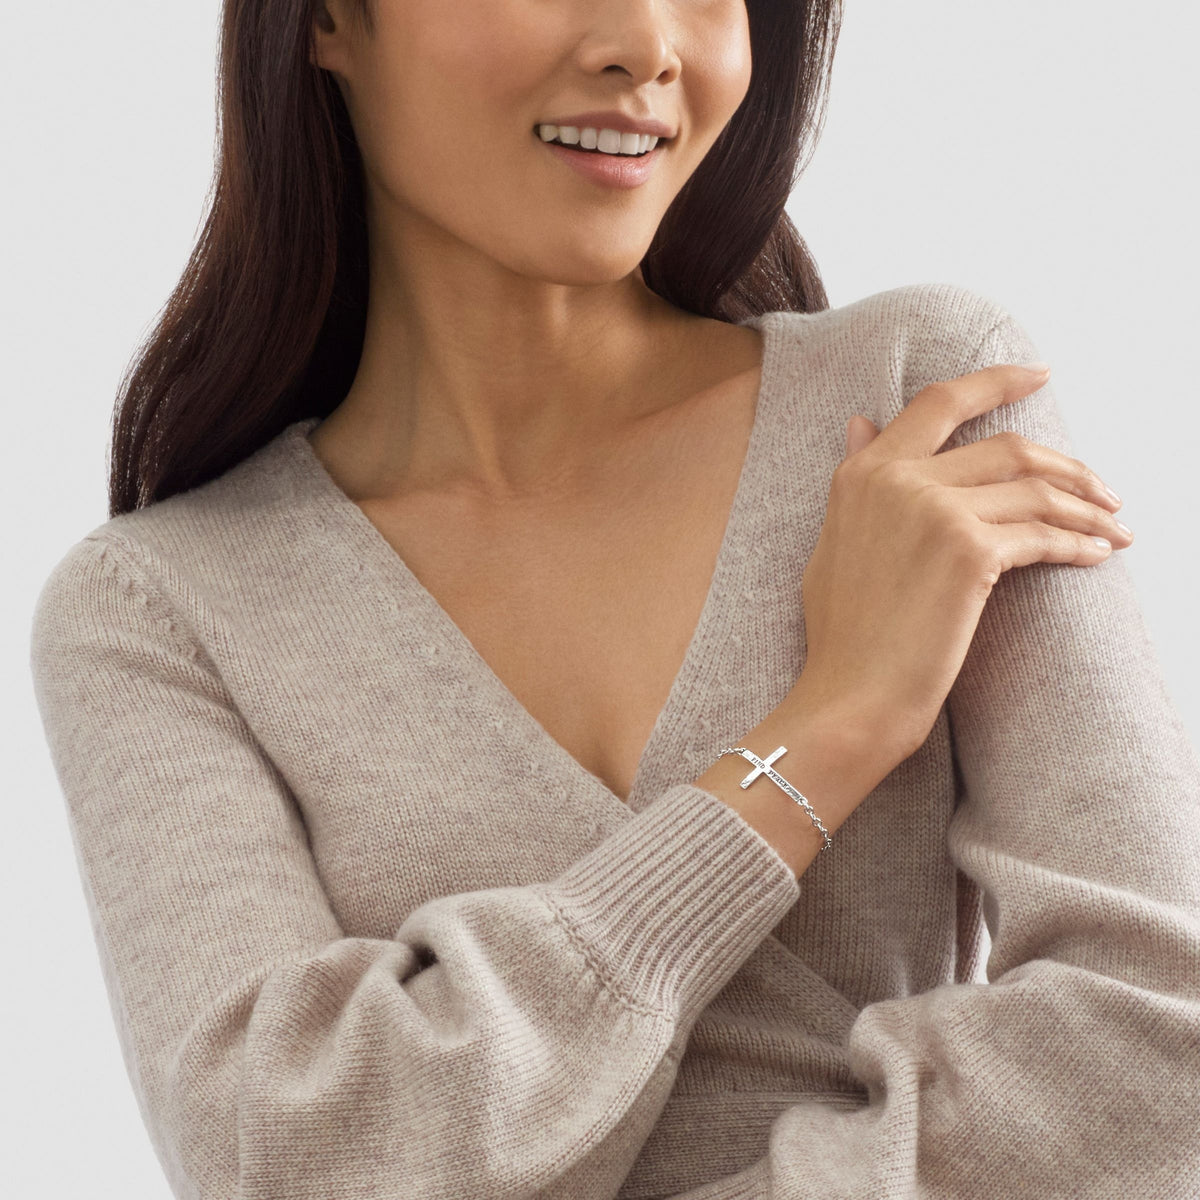 Silpada 'Find Peace' Horizontal Cross Link Bracelet